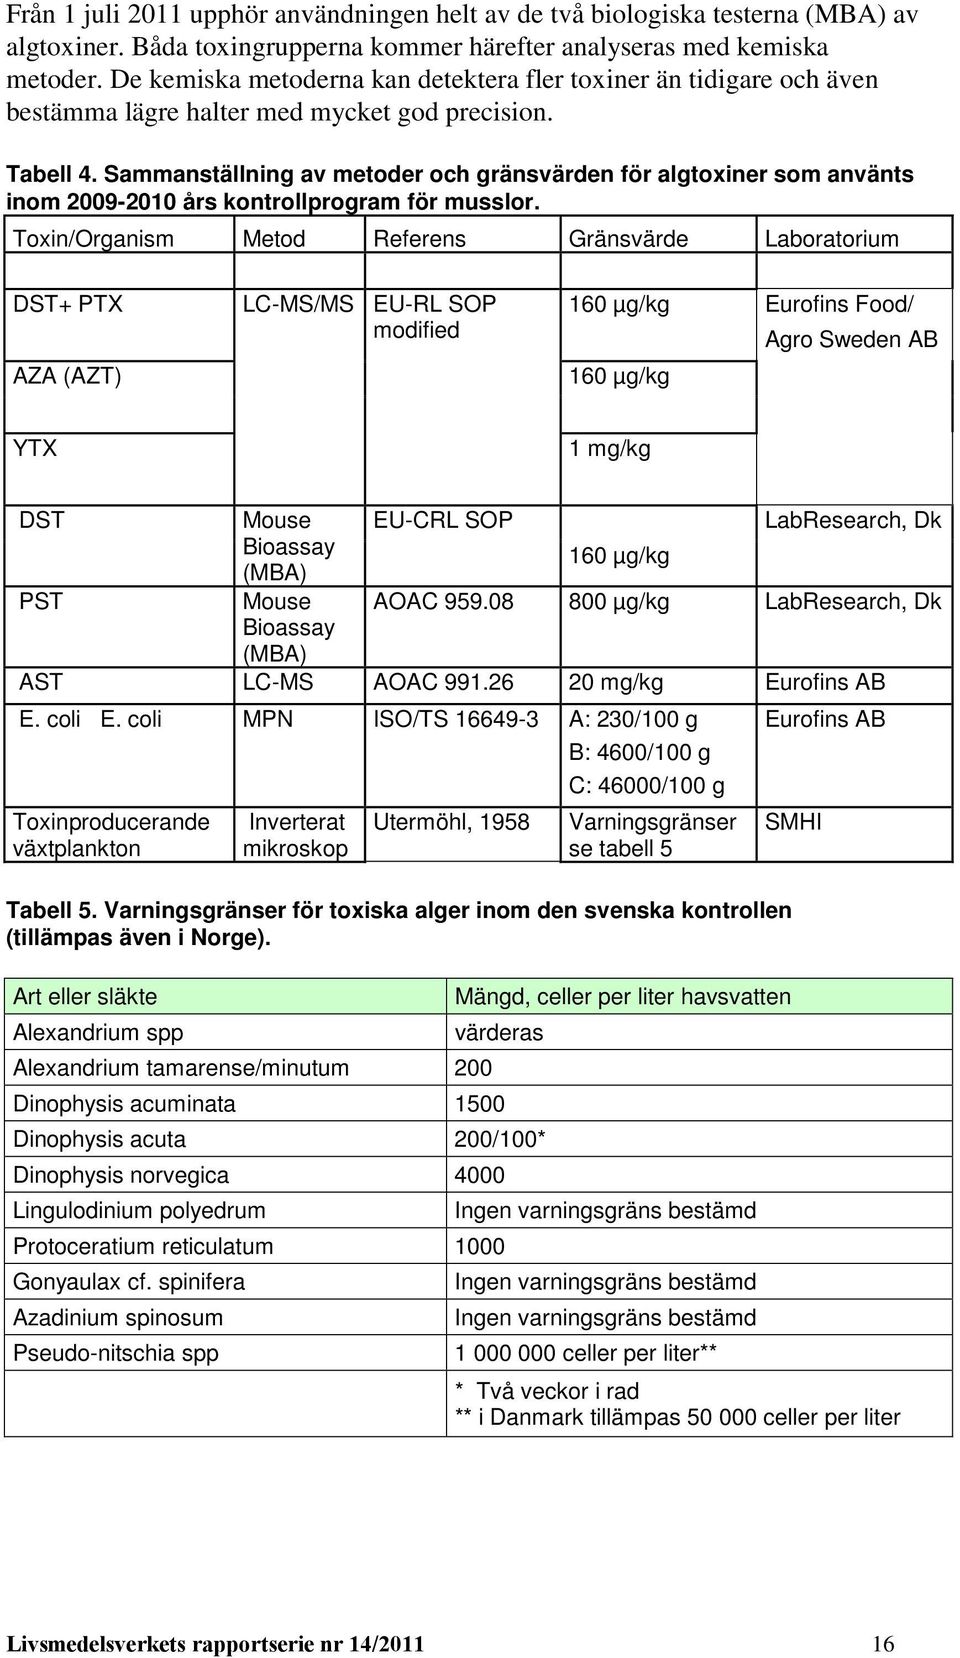 Sammanställning av metoder och gränsvärden för algtoxiner som använts inom 2009-2010 års kontrollprogram för musslor.